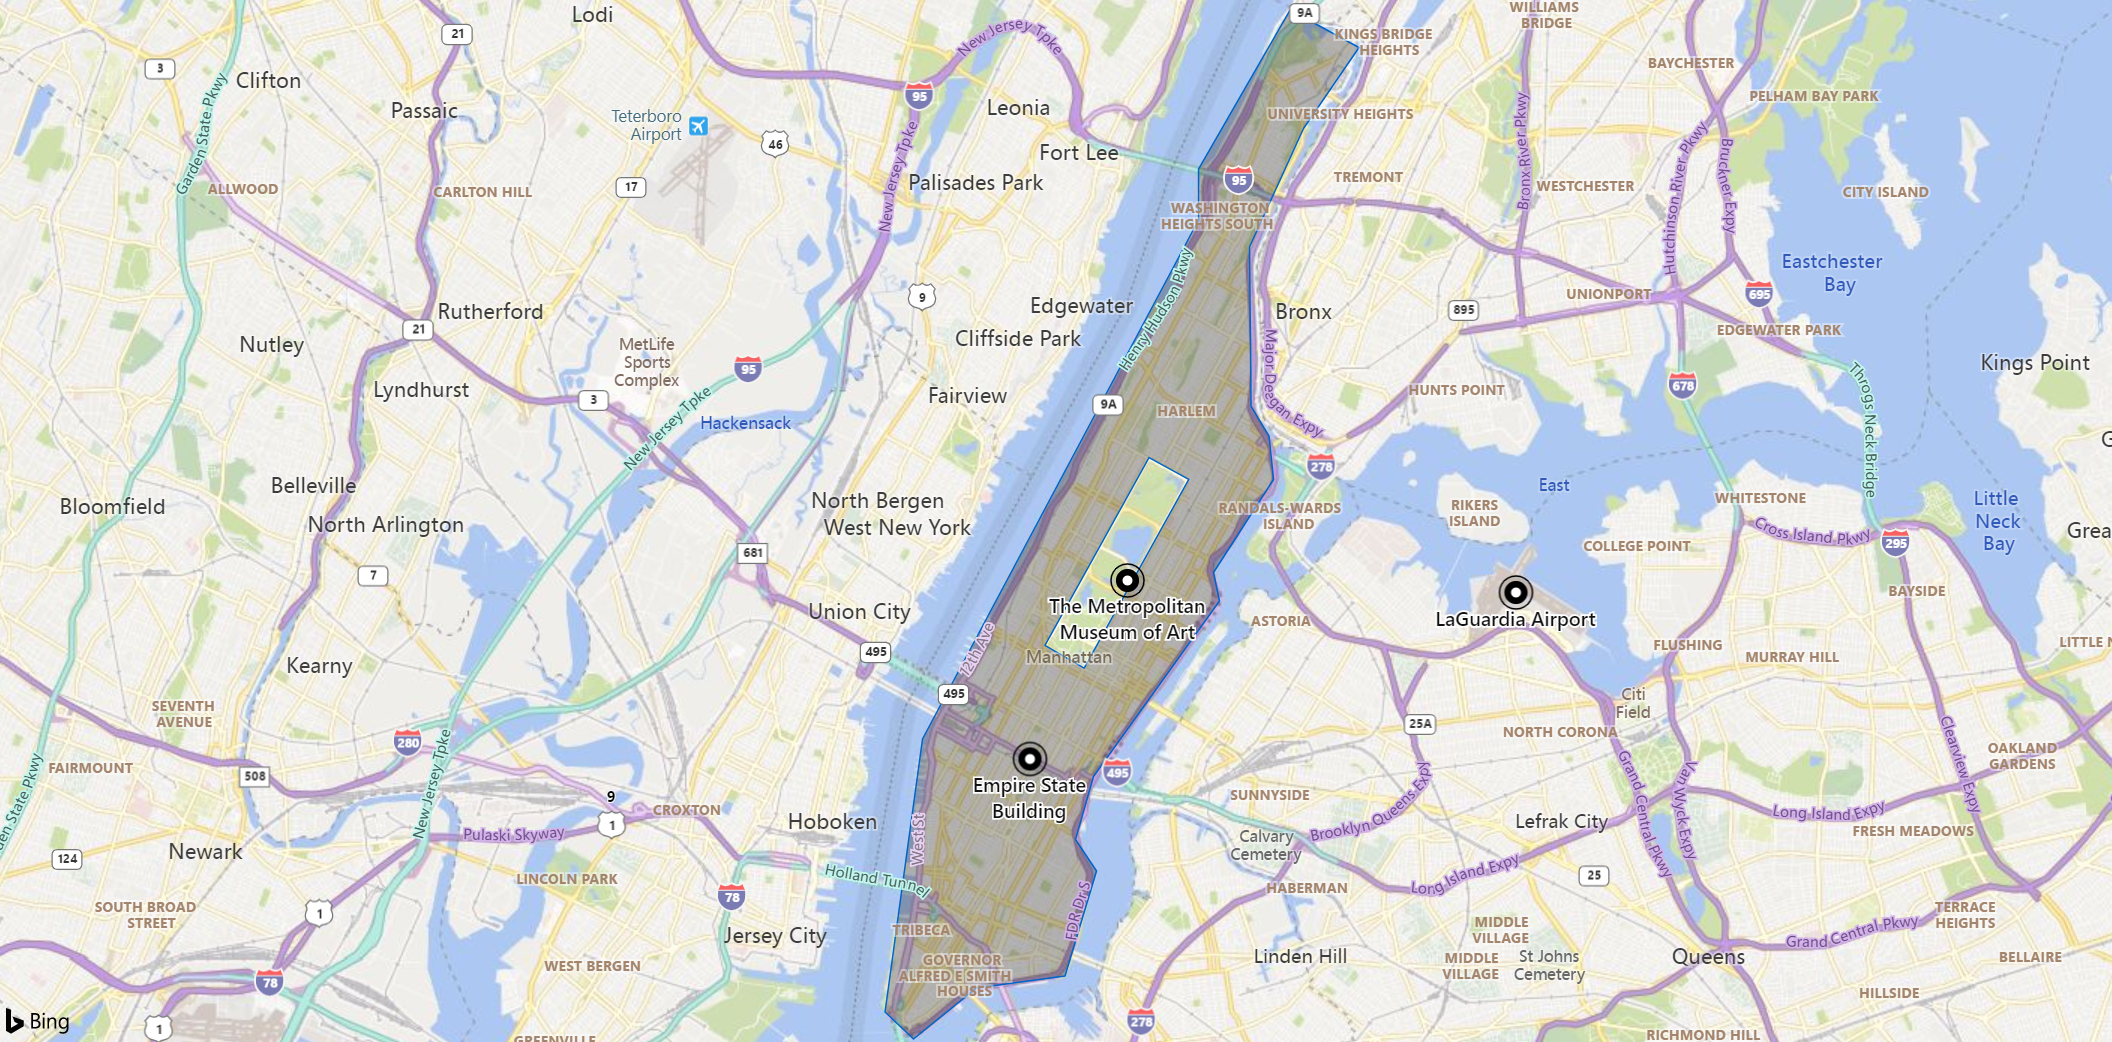 マンハッタンエリアの地図のスクリーンショット。ランドマーク、博物館、空港のマーカーが表示されています。島はセントラルパークを除いて淡色表示されます。